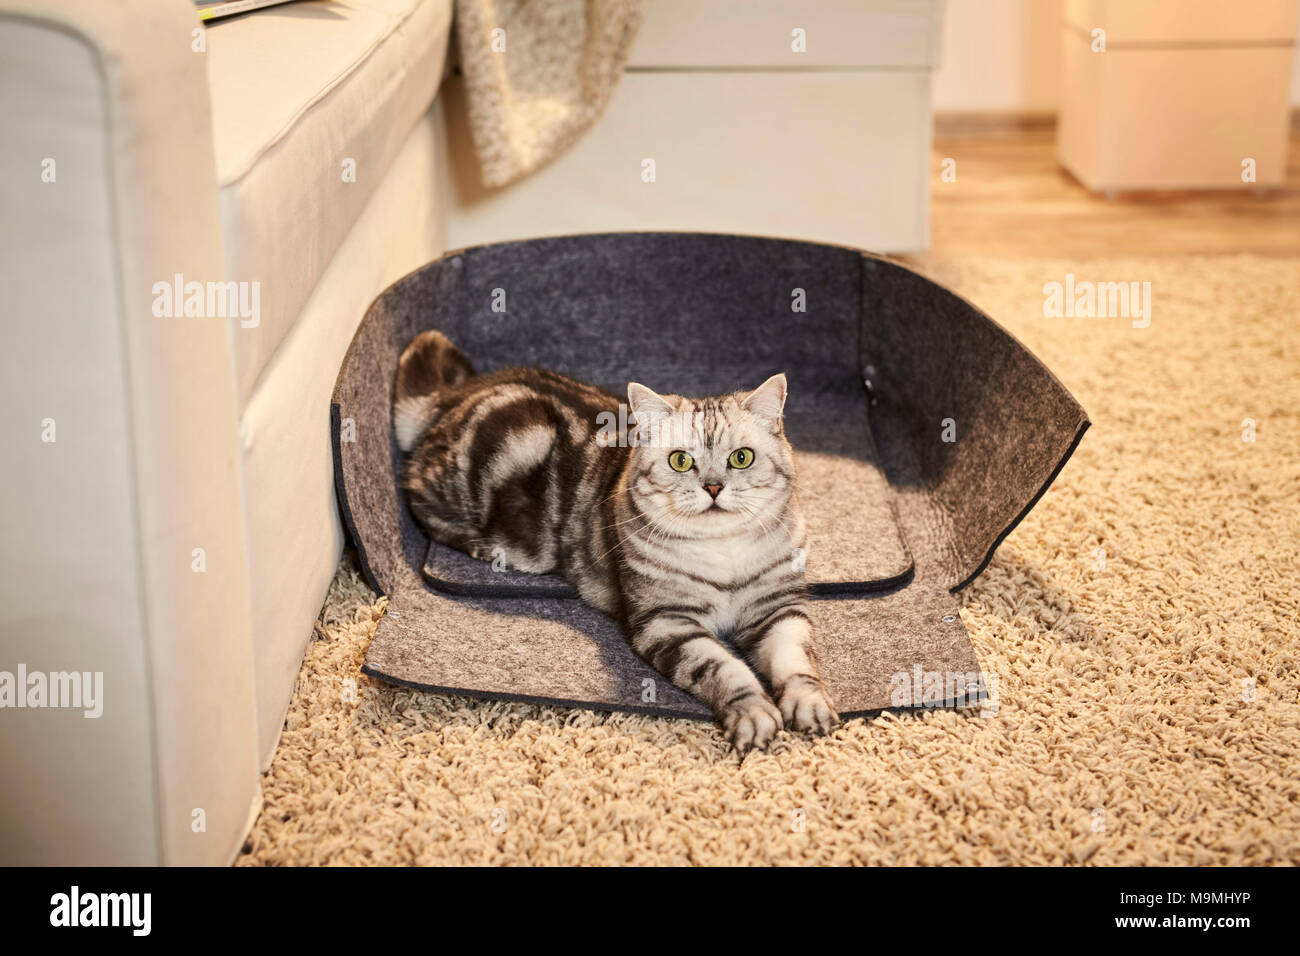 British Shorthair cat. Tabby adulto giacente in un aperto lettino pet fatta di feltro. Germania Foto Stock